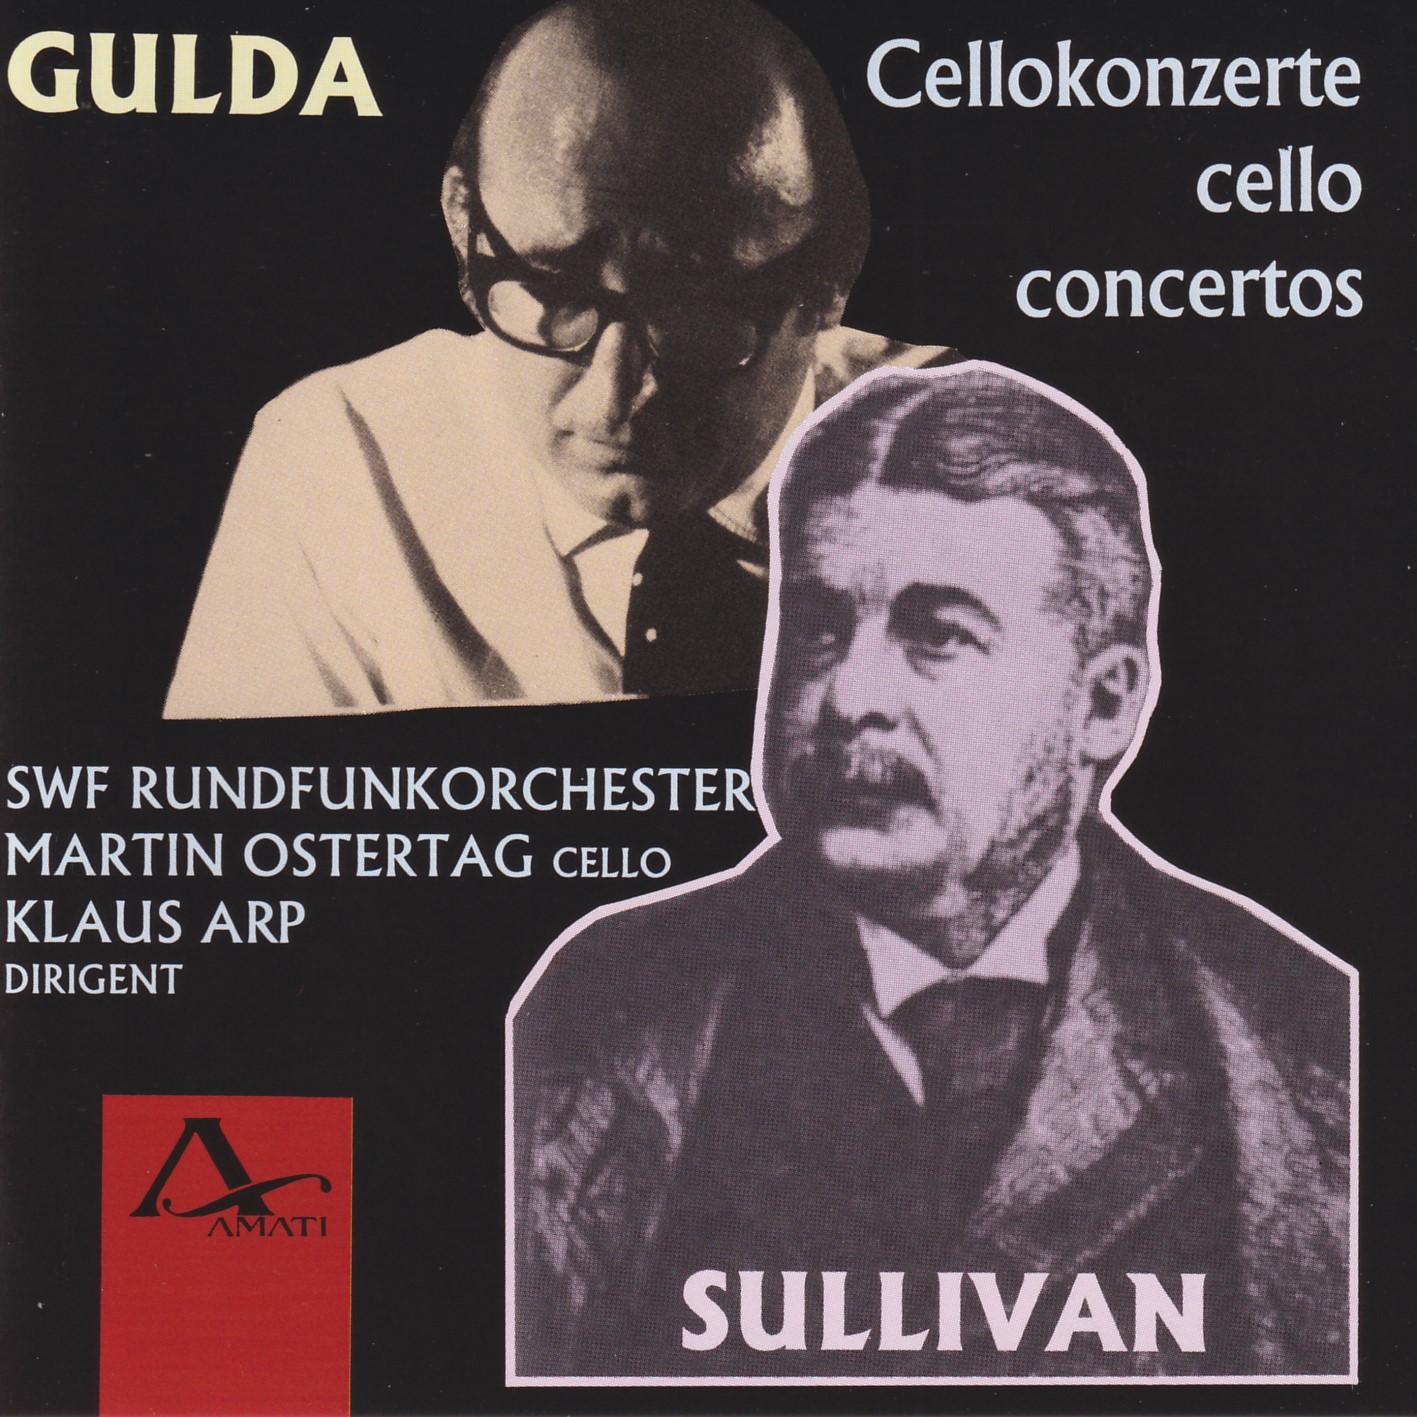 Friedrich Gulda / Arthur Sullivan - Cellokonzerte